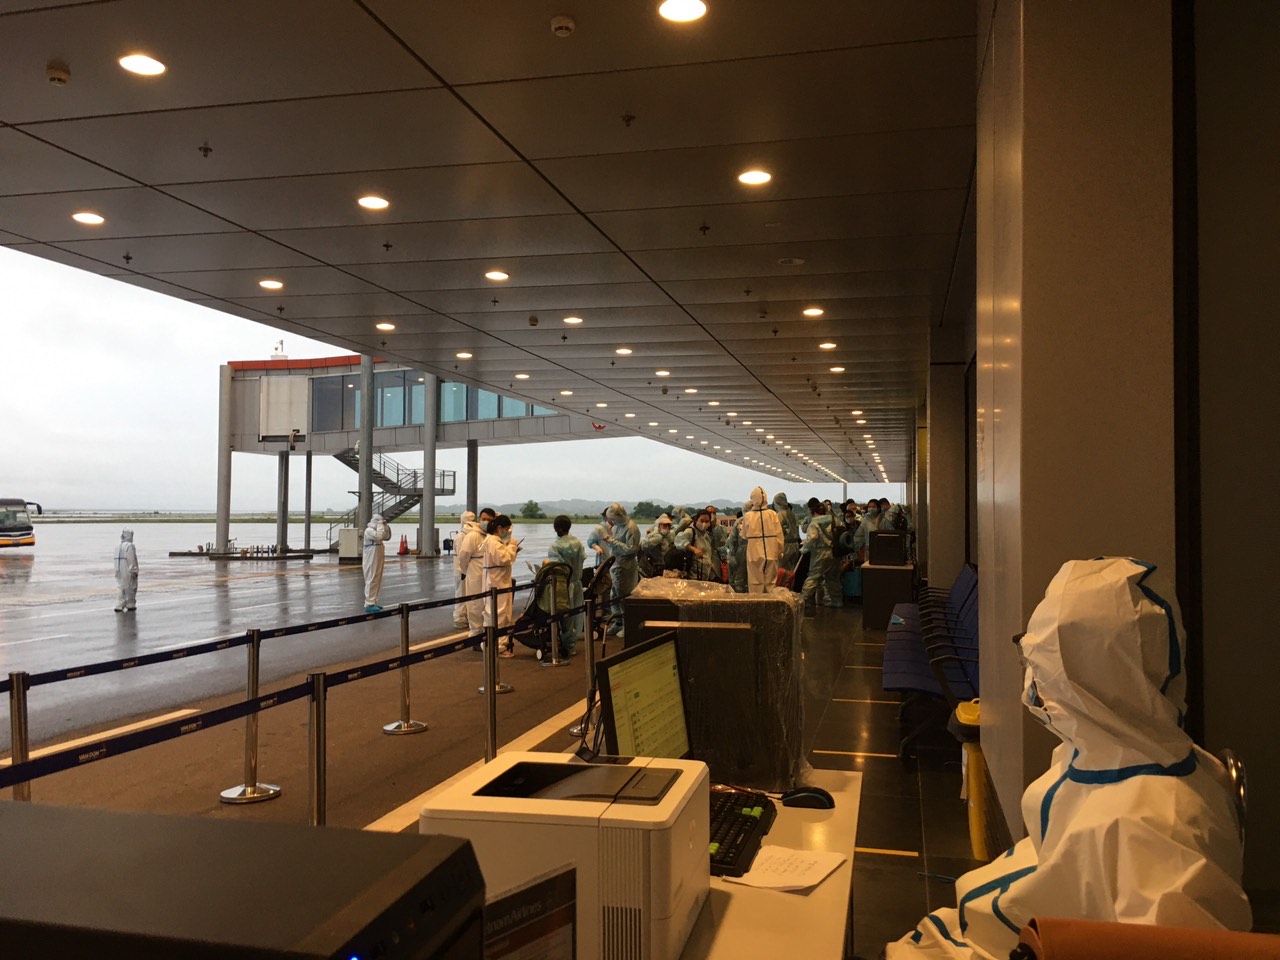 Khách nhập cảnh tại sân bay quốc tế Vân Đồn, tỉnh Quảng Ninh sáng 3/10. Ảnh: VGP/Hiền Minh